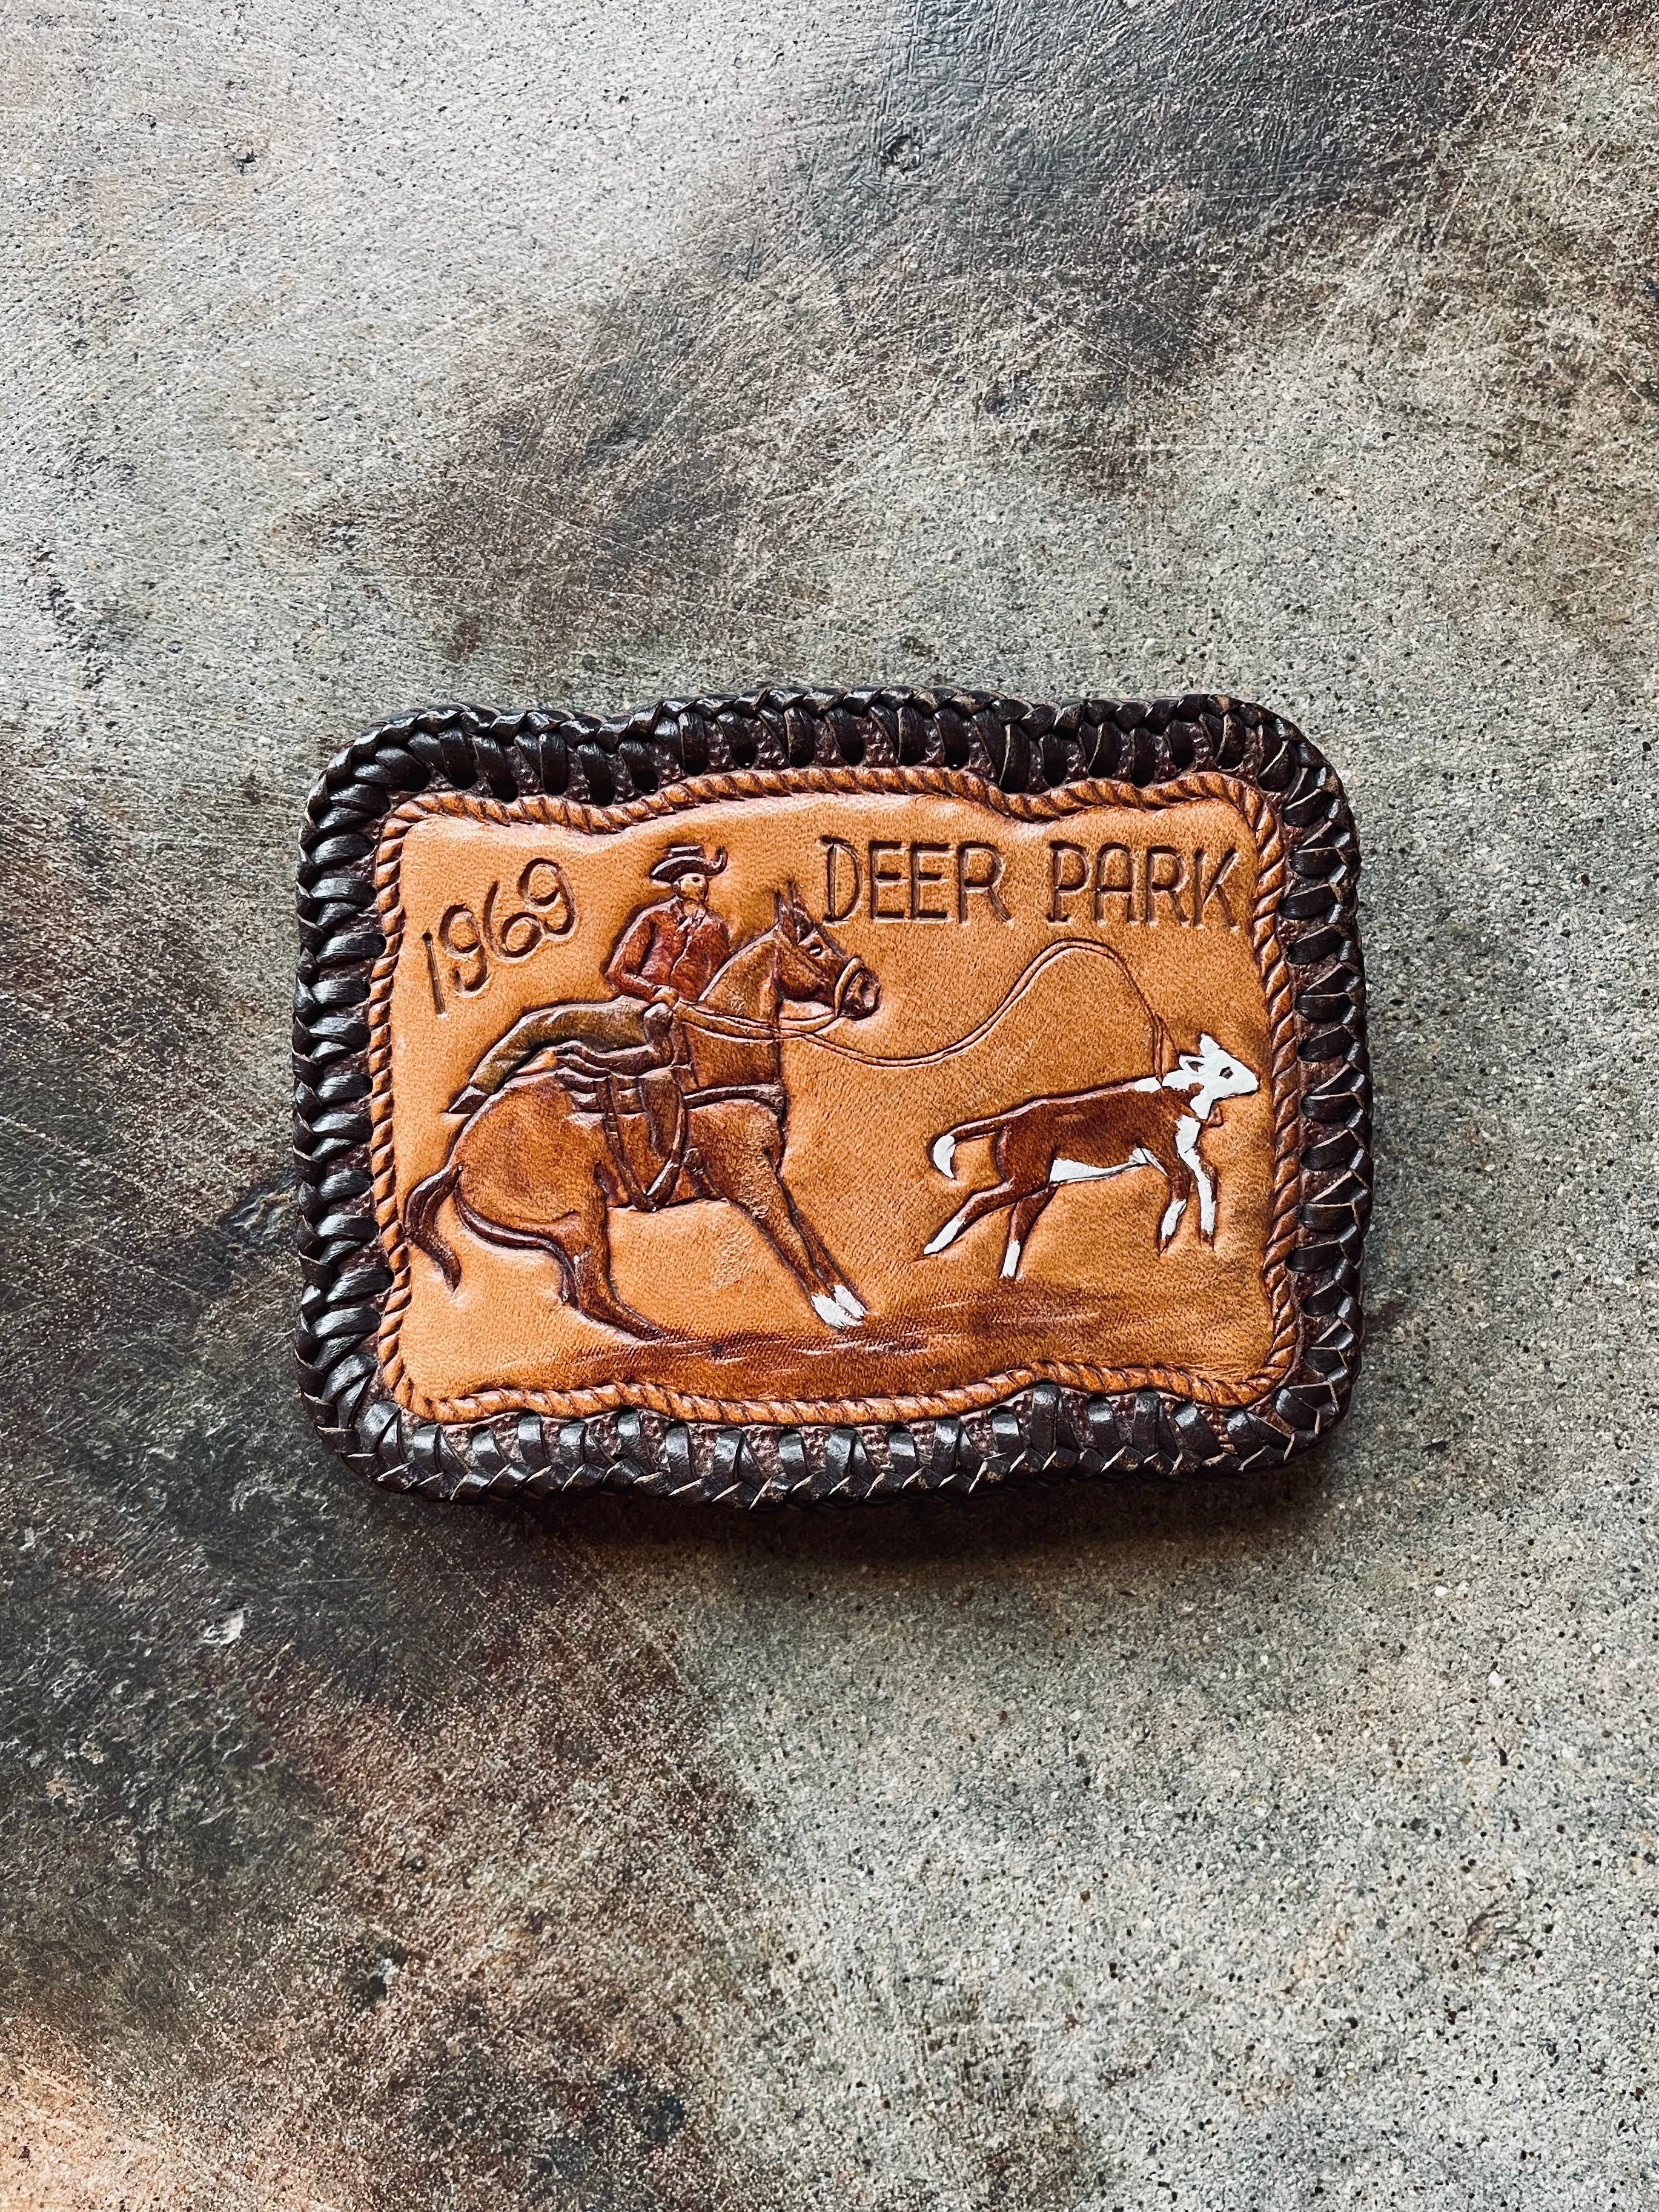 1969 Deer Park Leather Belt Buckle